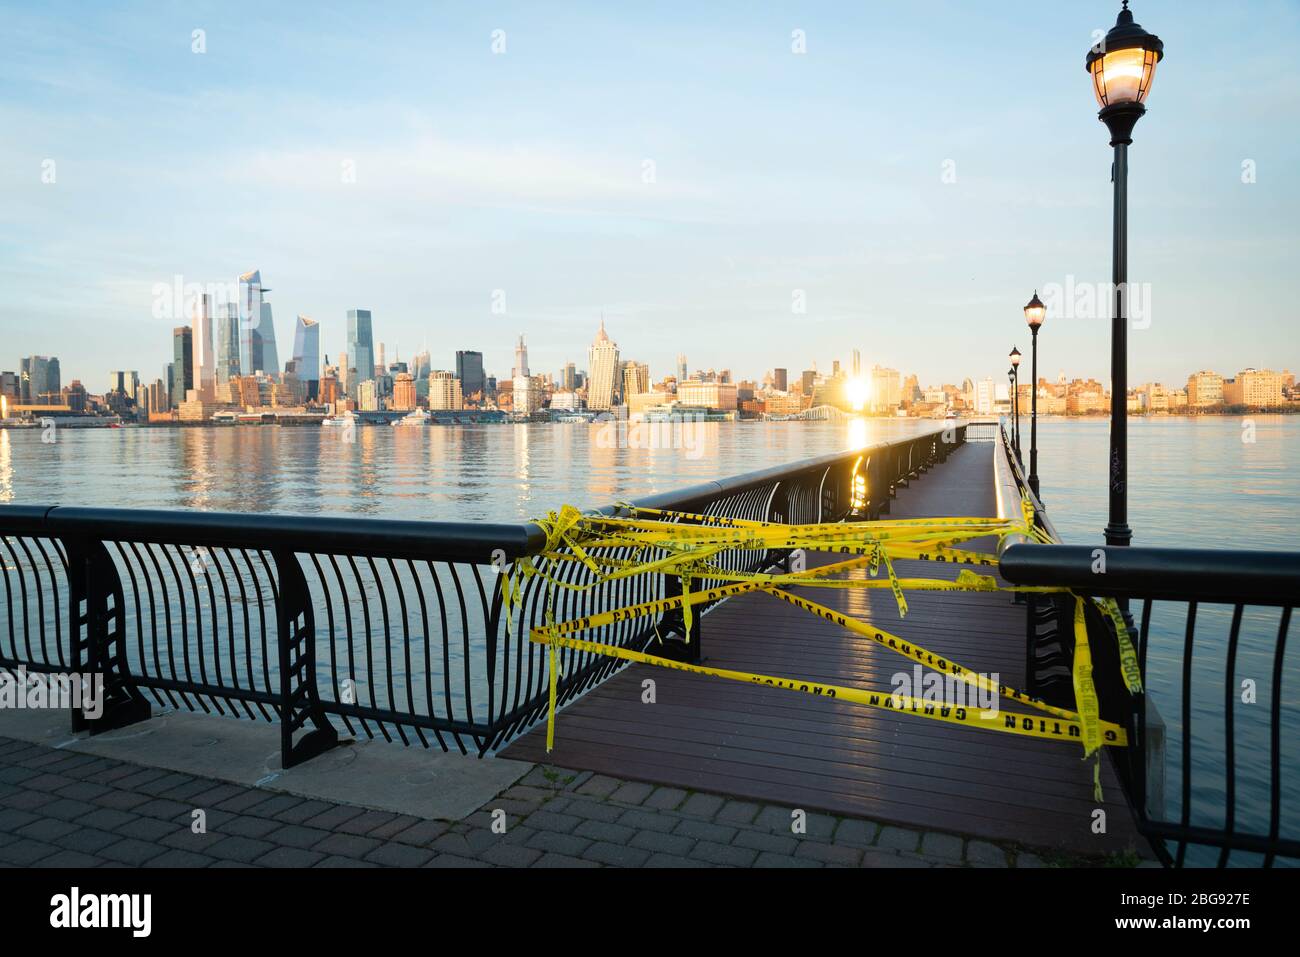 L'embarcadère de Hoboken NJ au bord de l'eau a fermé au coucher du soleil en raison de l'éclosion de Coronavirus de COVID-19 Banque D'Images